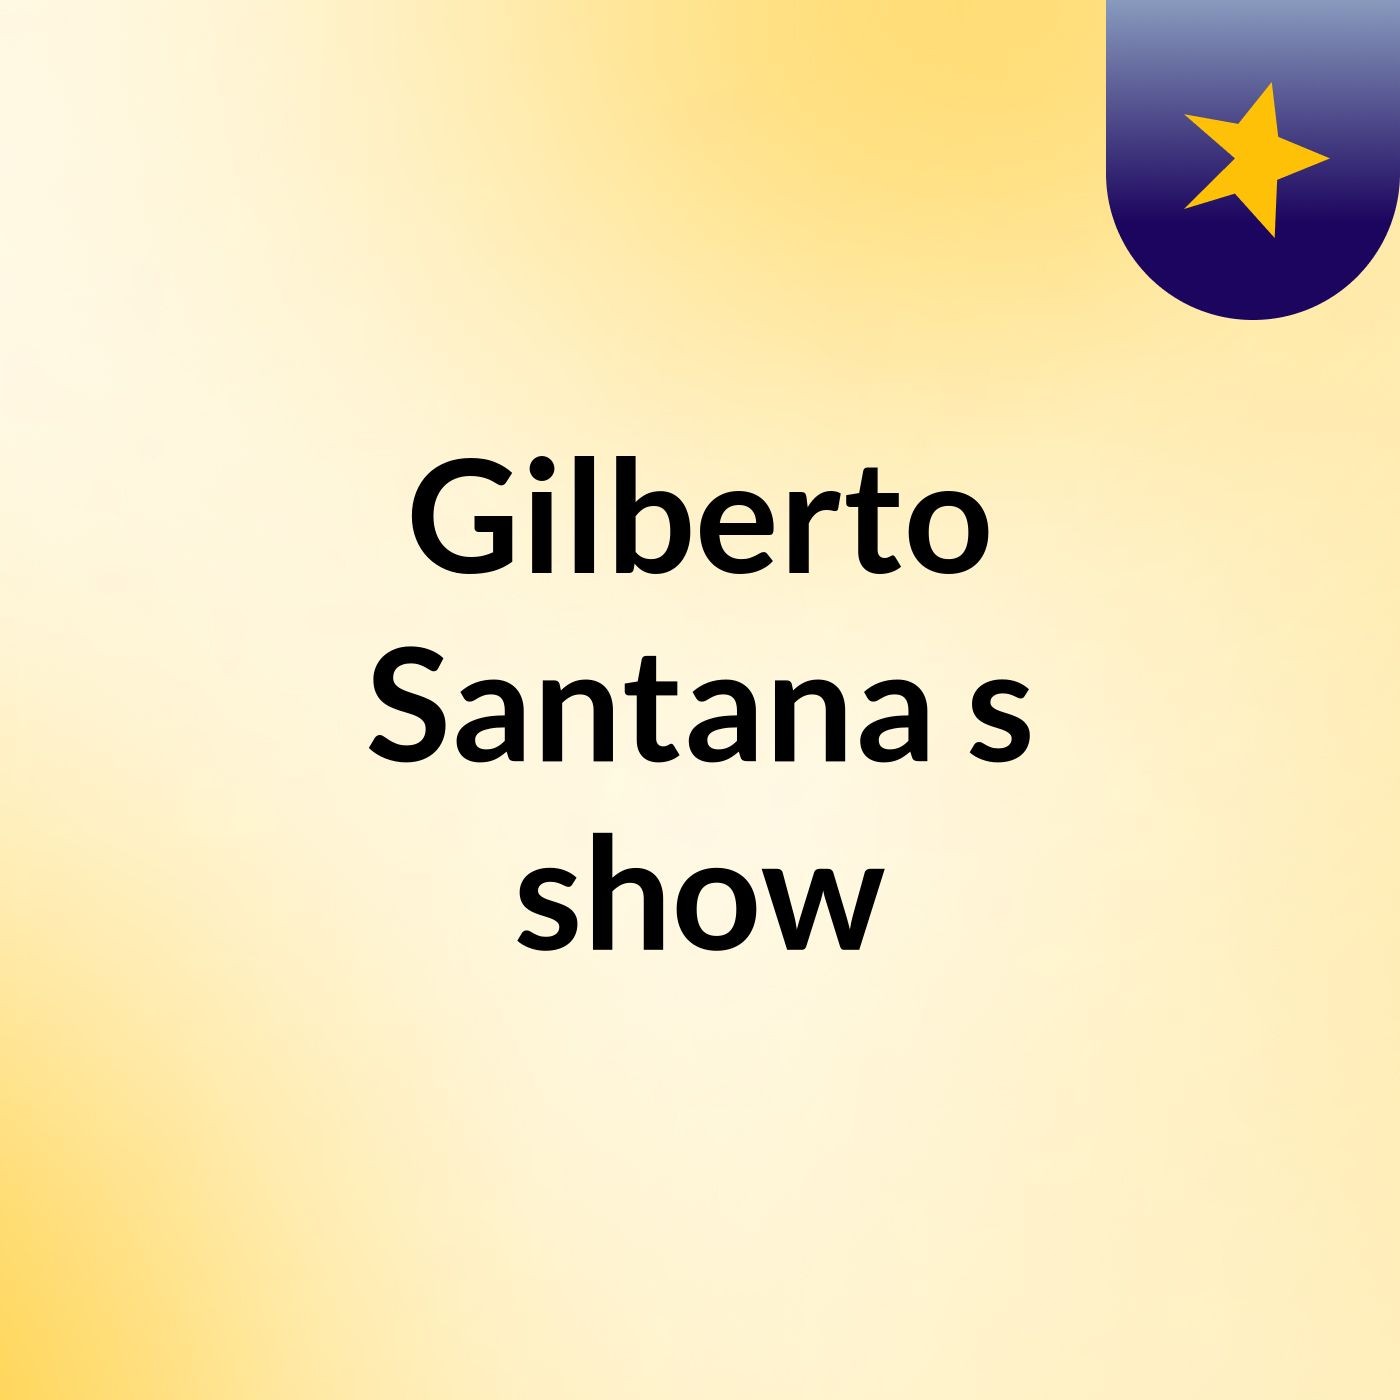 Gilberto Santana's show